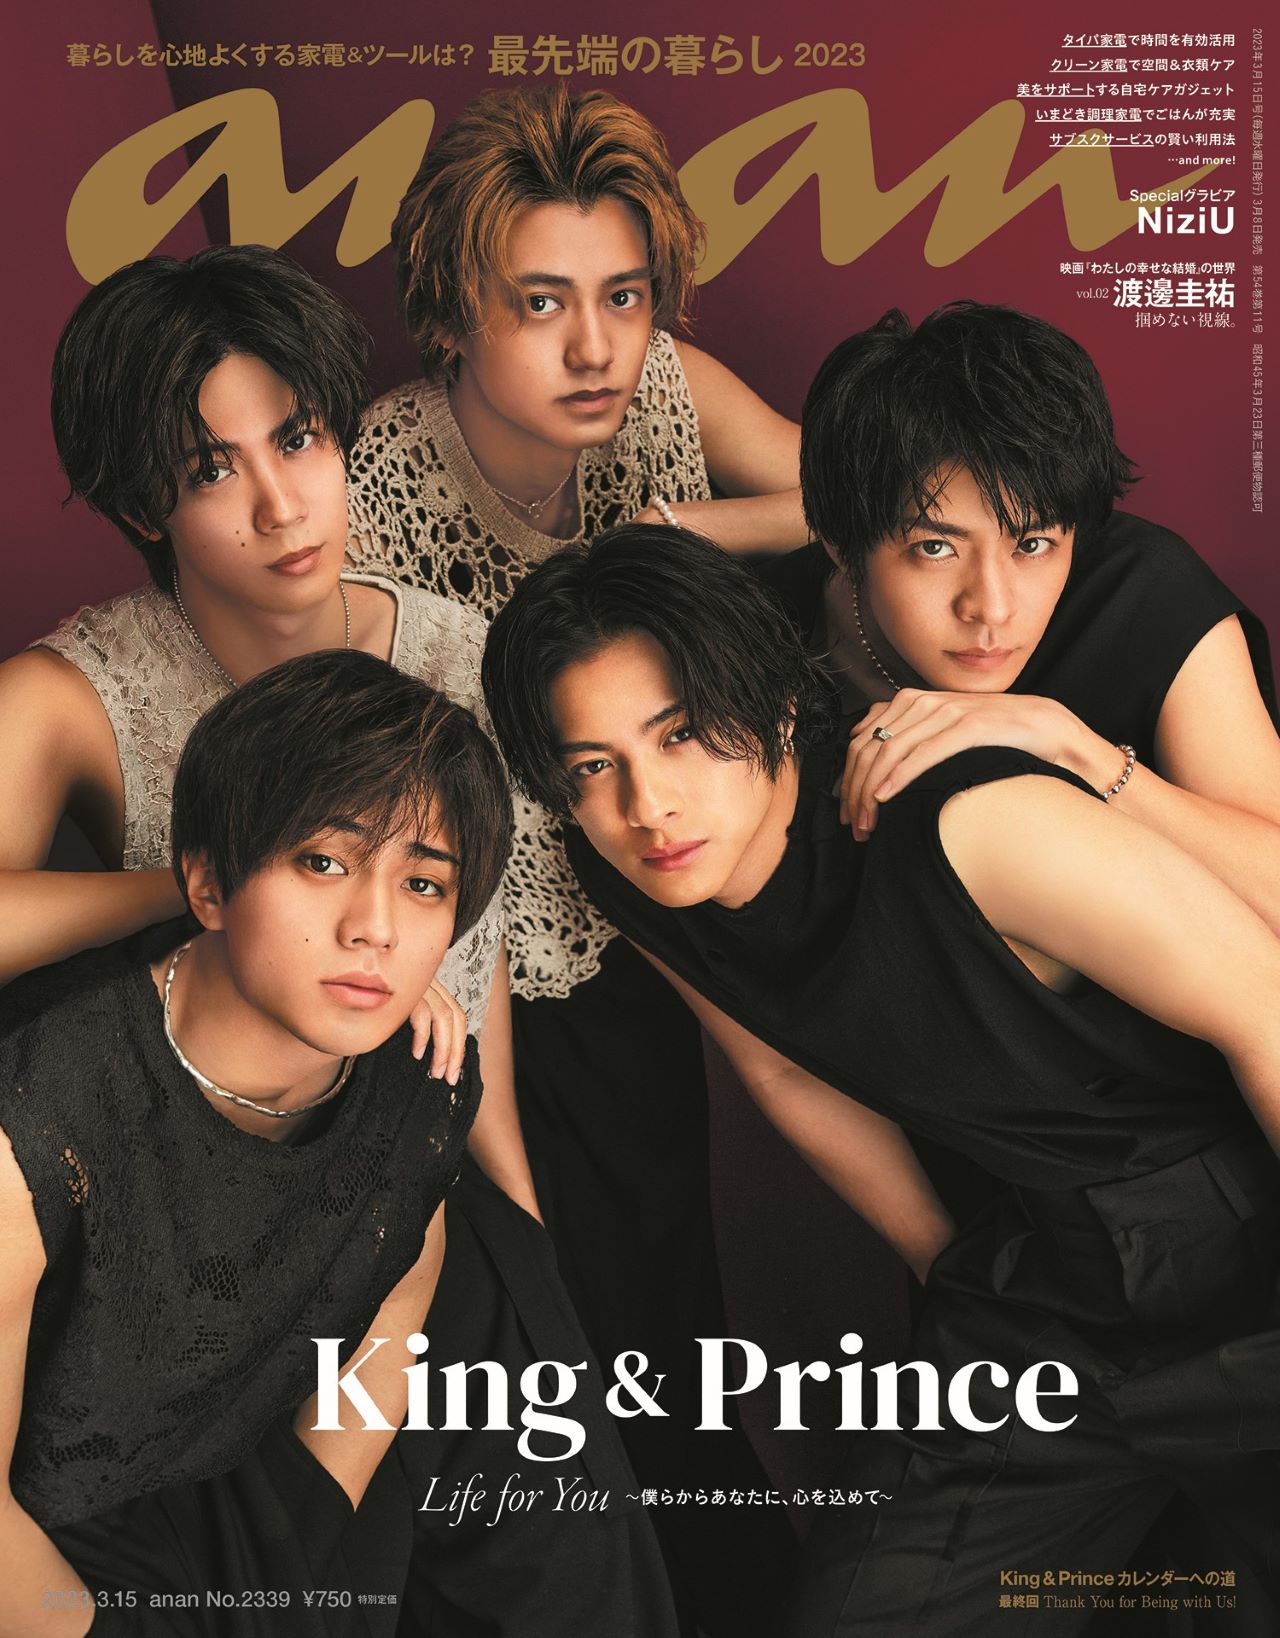 King ＆ Prince、絶対的タイミングで「anan」表紙登場 5人が“1番